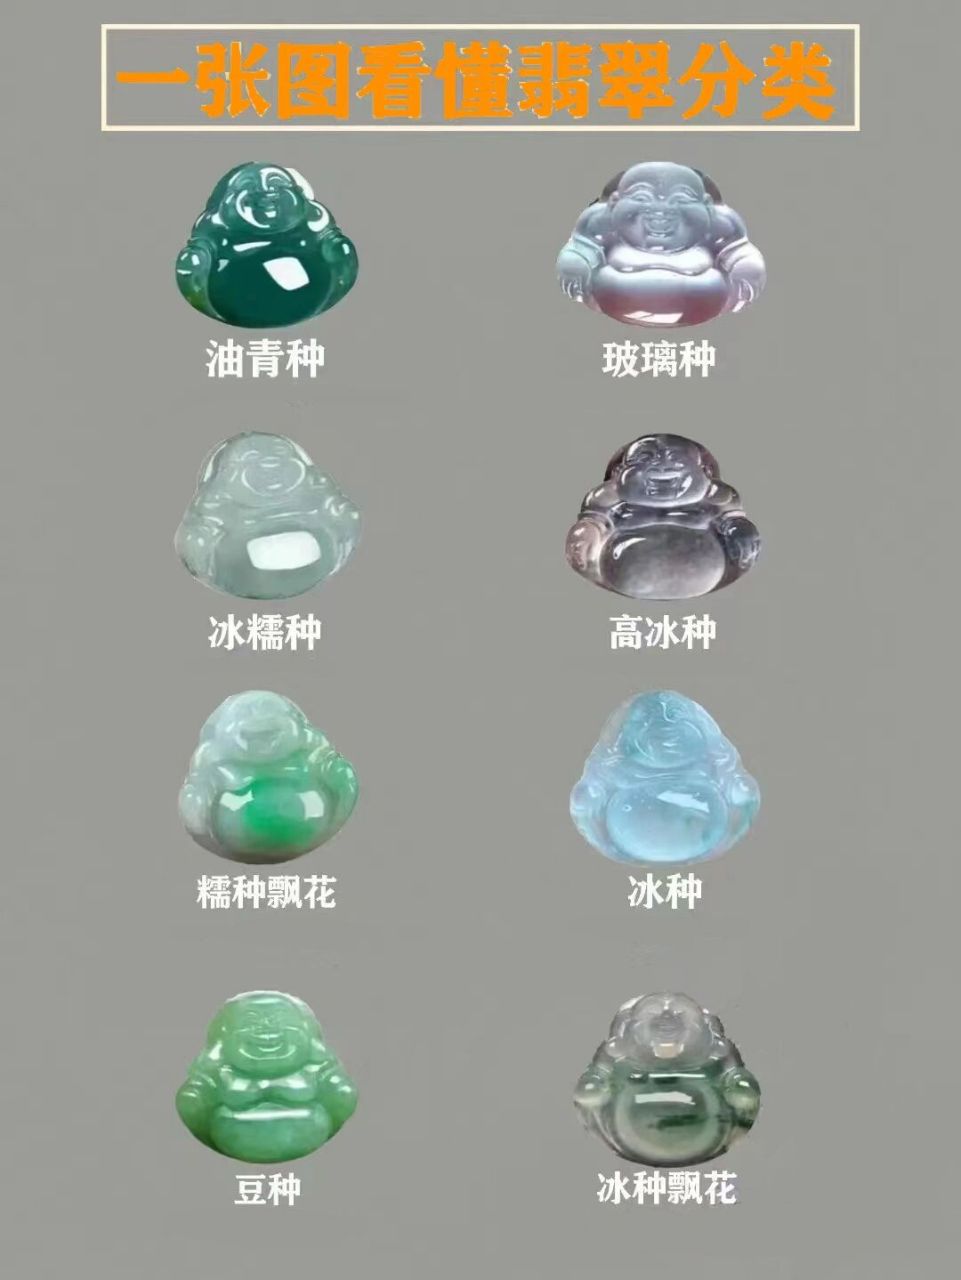 一张图看懂翡翠种水分级 玻璃种:似玻璃,水晶那样清亮,晶莹透明的翡翠